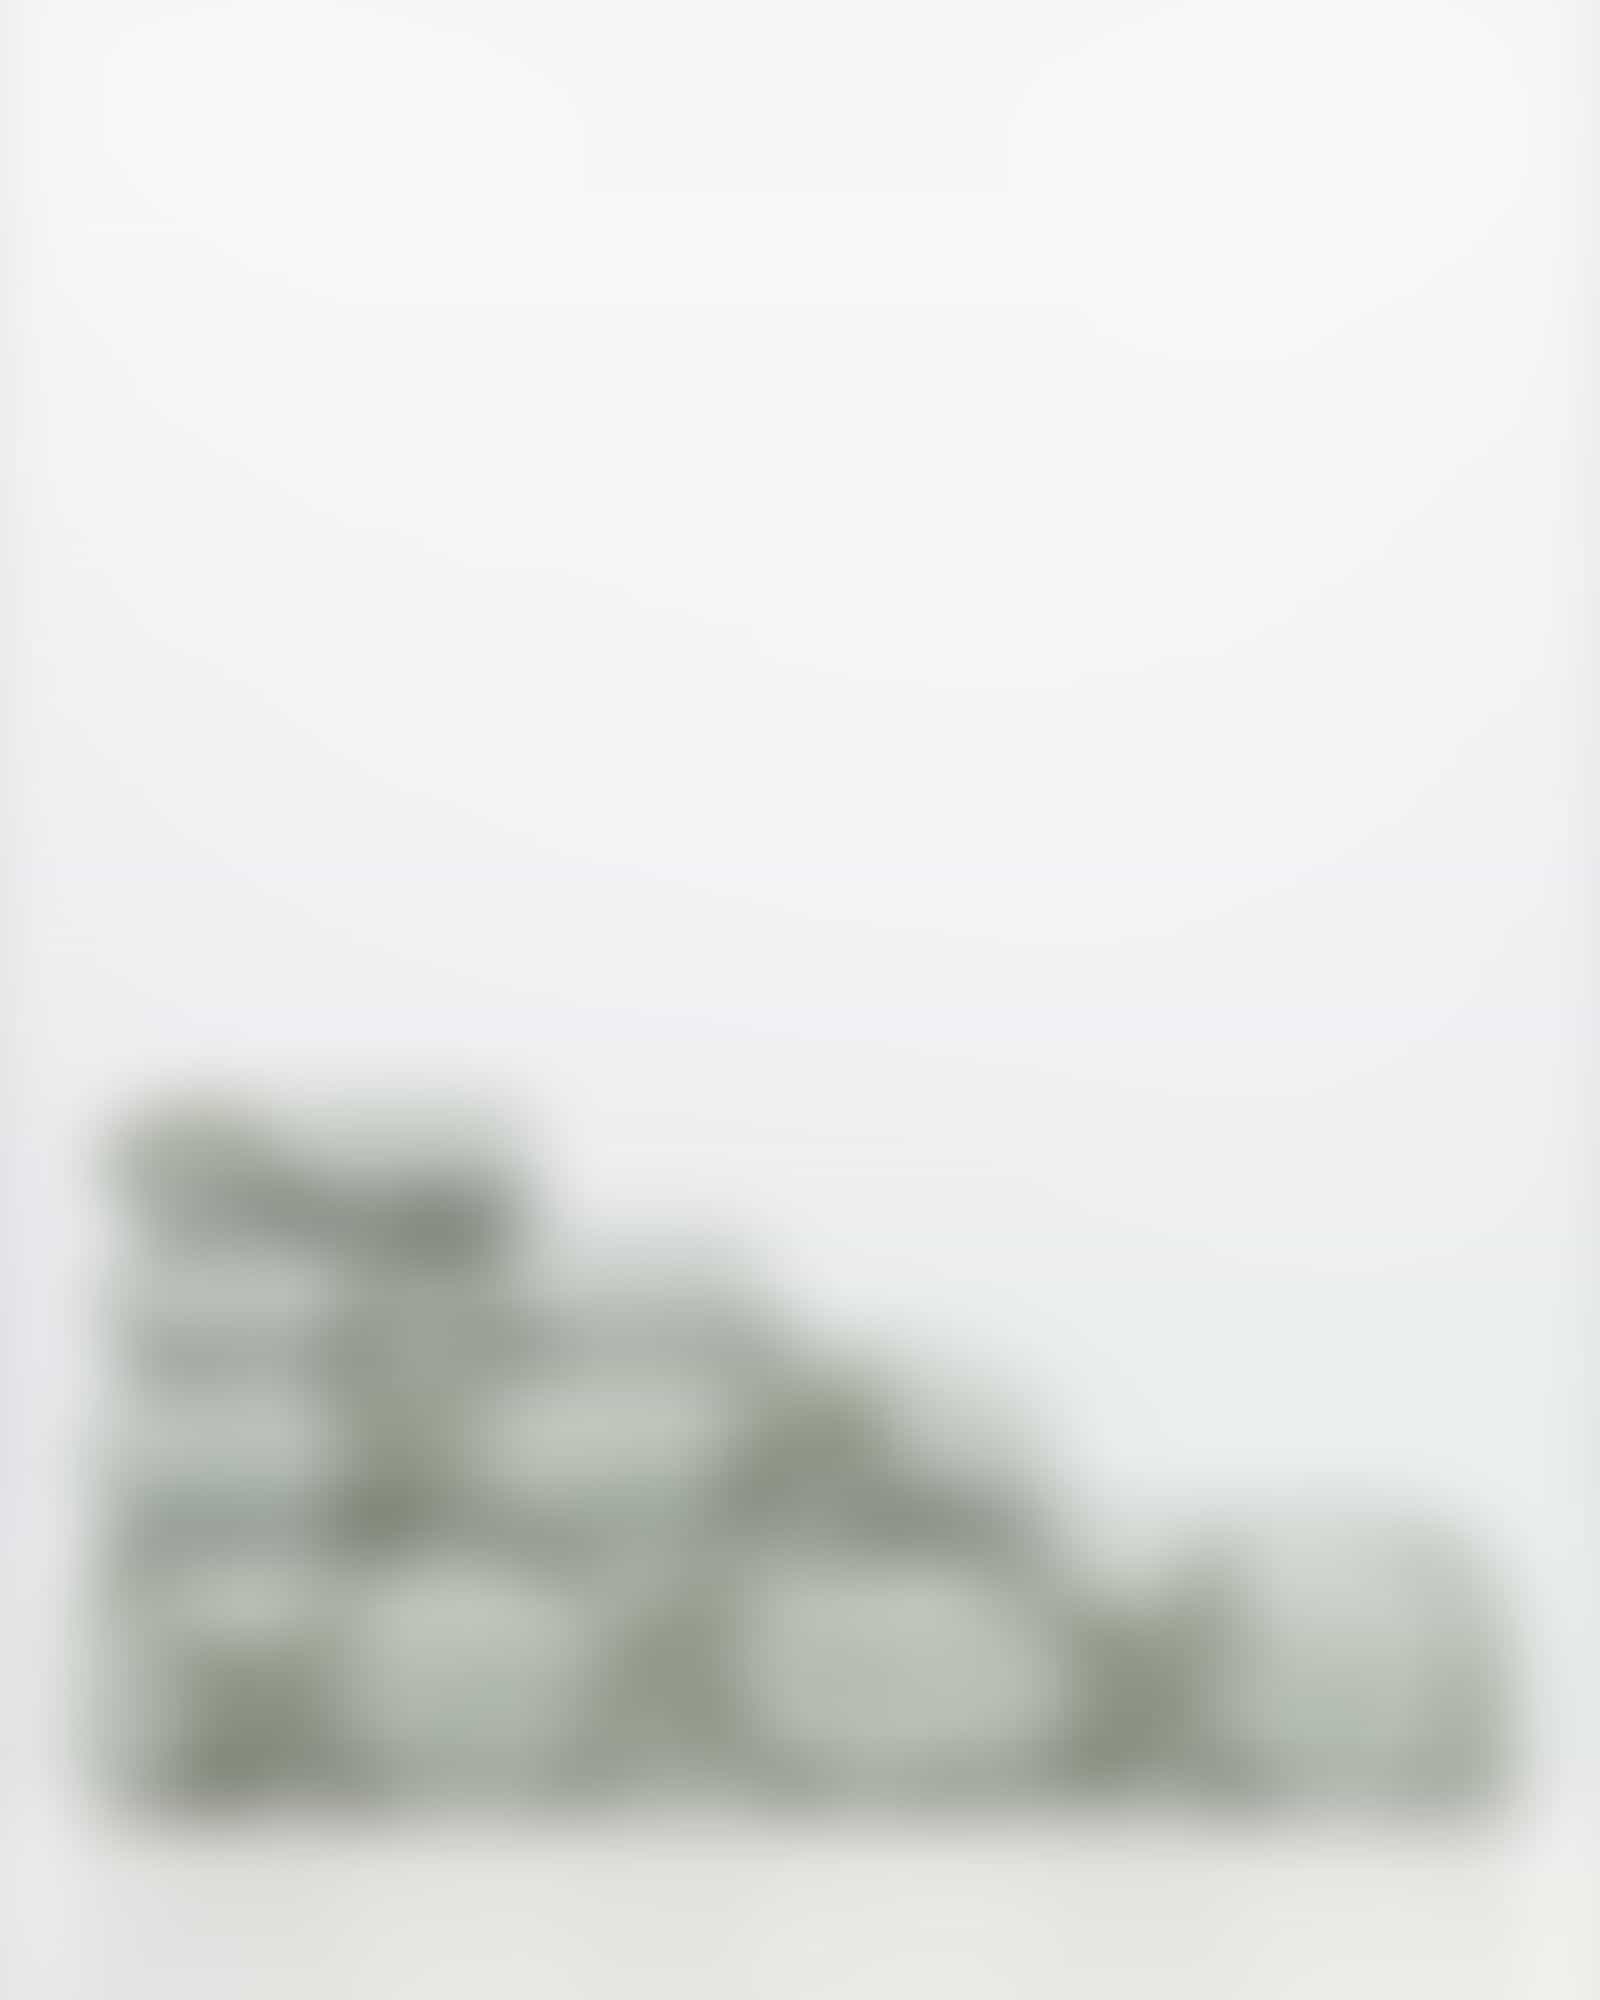 JOOP! Classic - Cornflower 1611 - Farbe: Salbei - 47 - Waschhandschuh 16x22 cm Detailbild 3